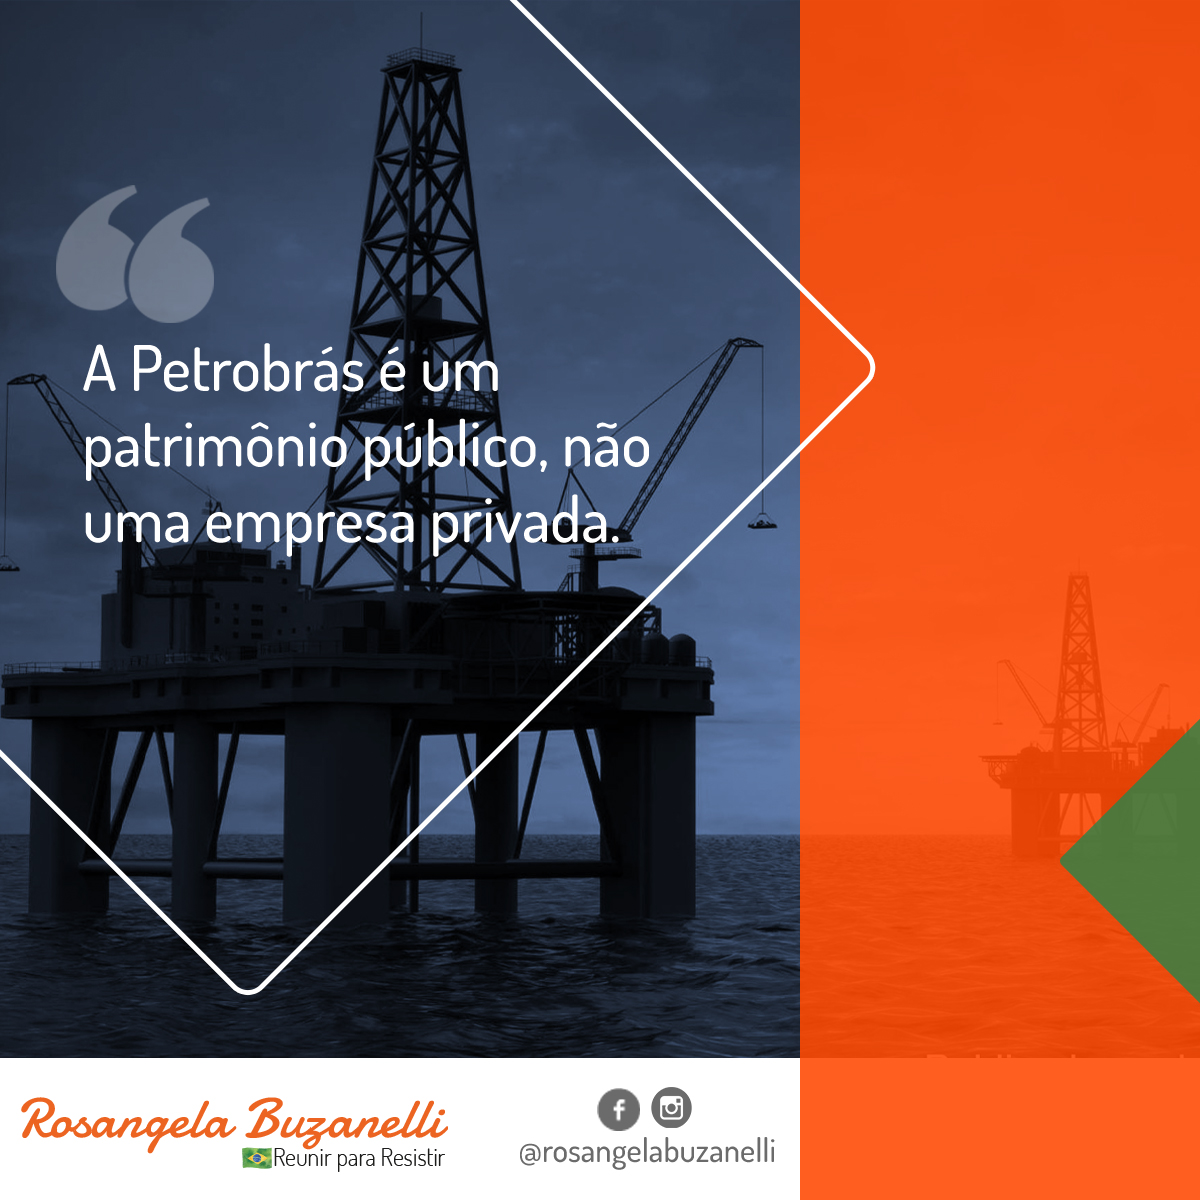 A Petrobrás é um patrimônio público, não uma empresa privada.